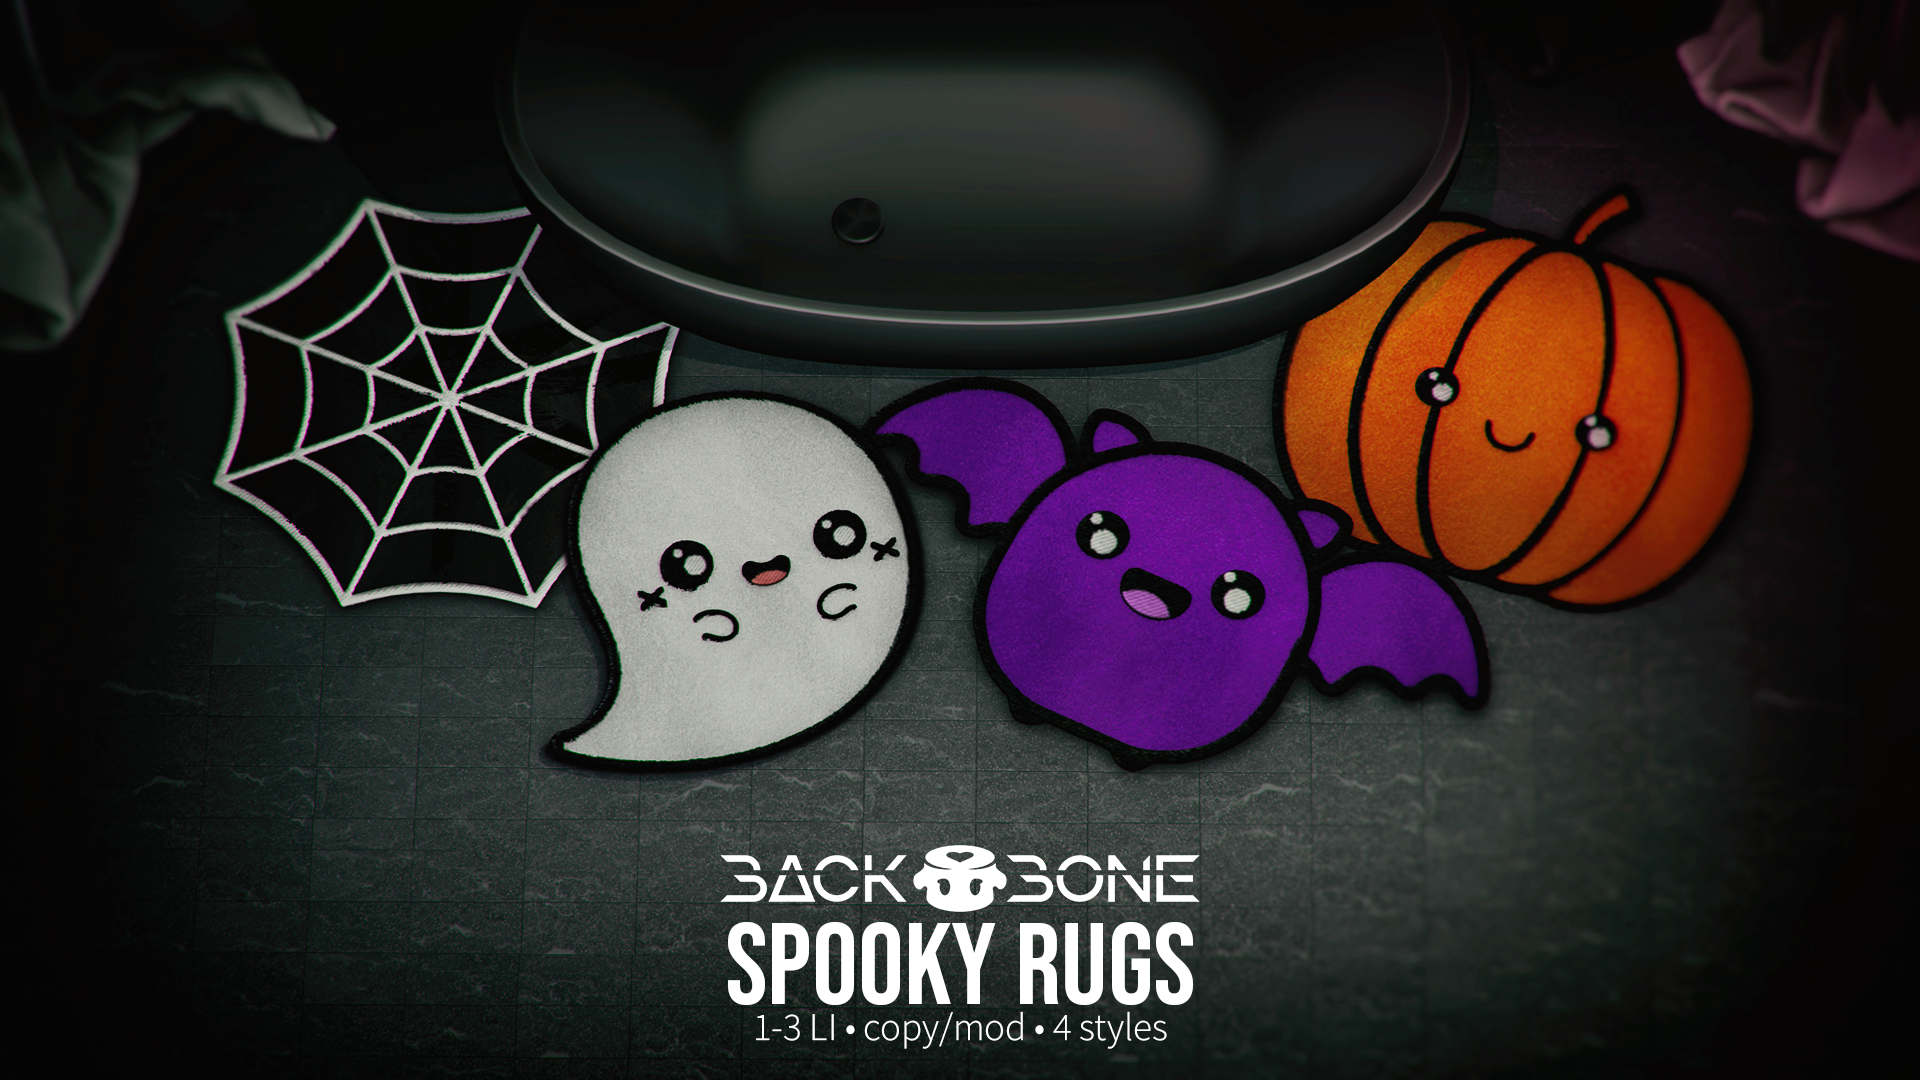 BackBone – Spooky Rugs